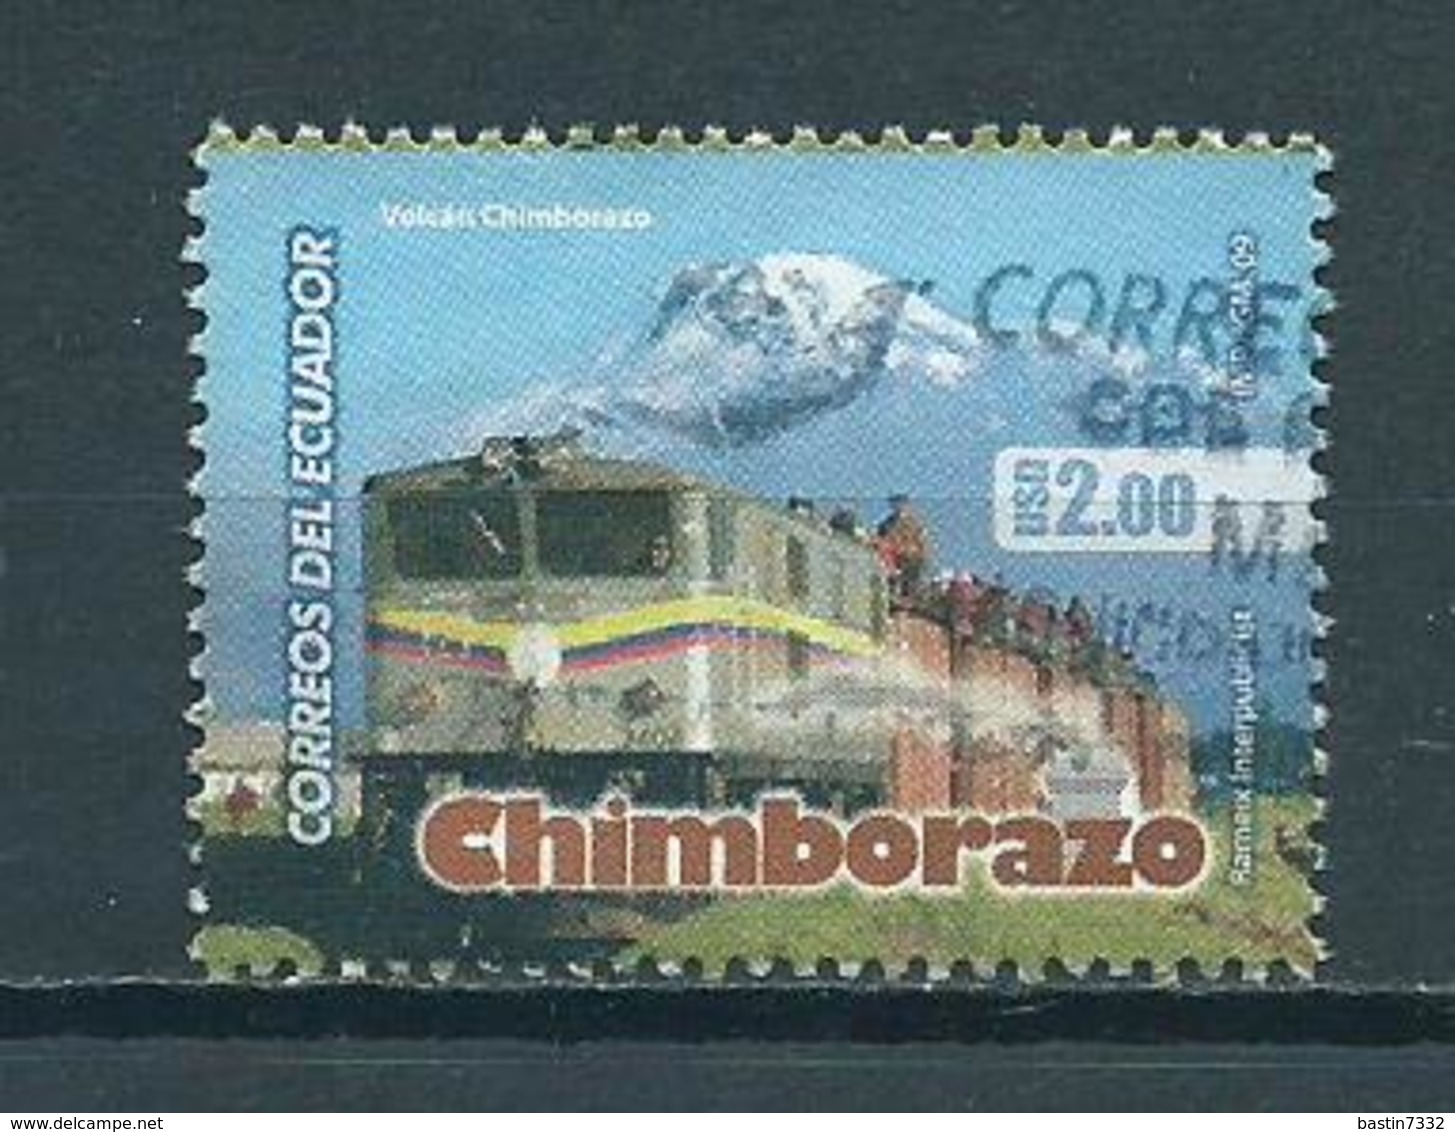 2009 Ecuador Chimborazo,railways,treinen,trains,zug Used/gebruikt/oblitere - Ecuador